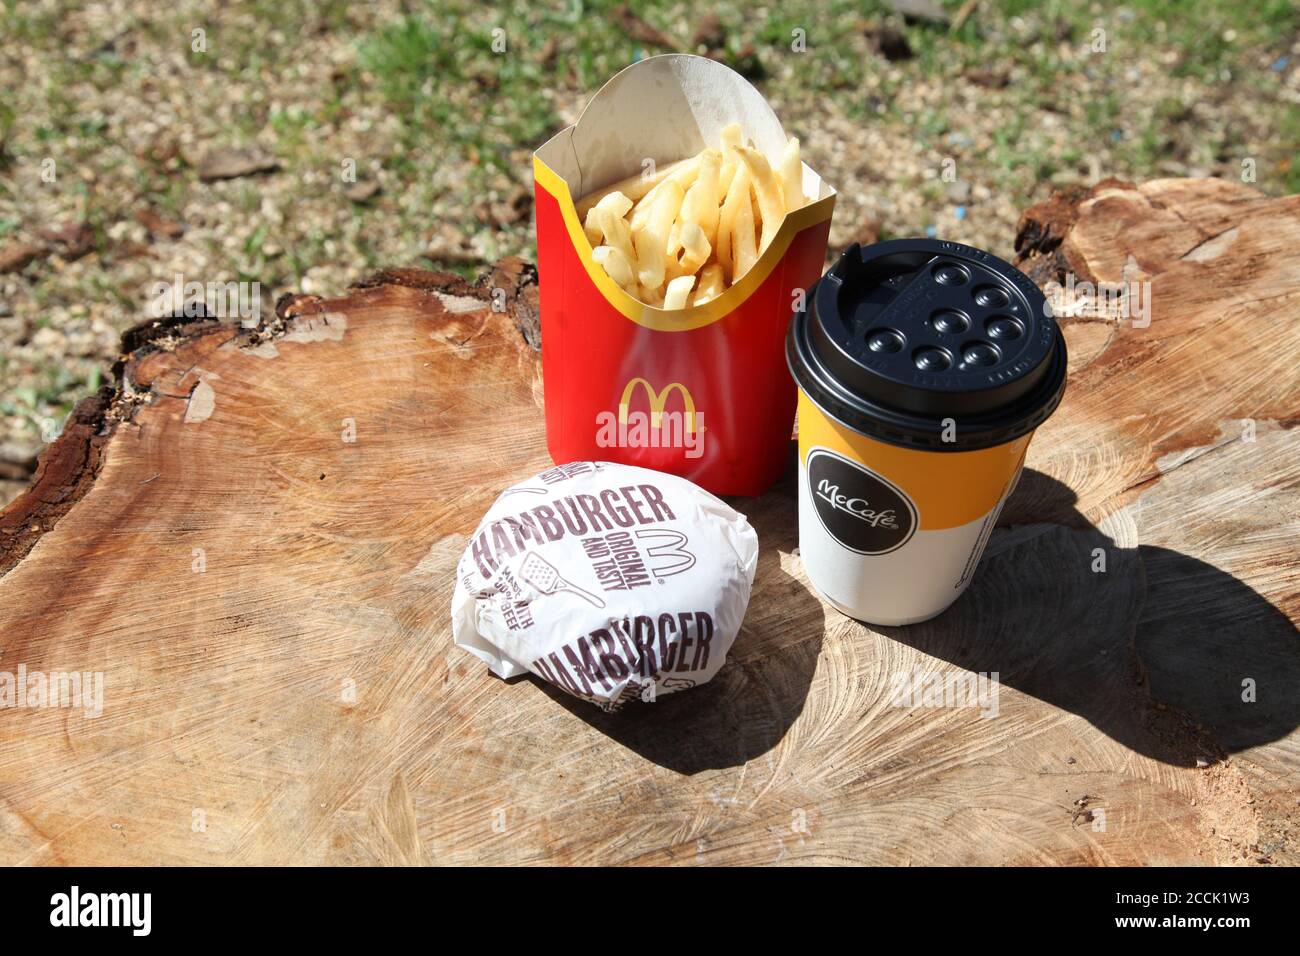 Mcdonalds Burger With Chips Stockfotos Und Bilder Kaufen Alamy